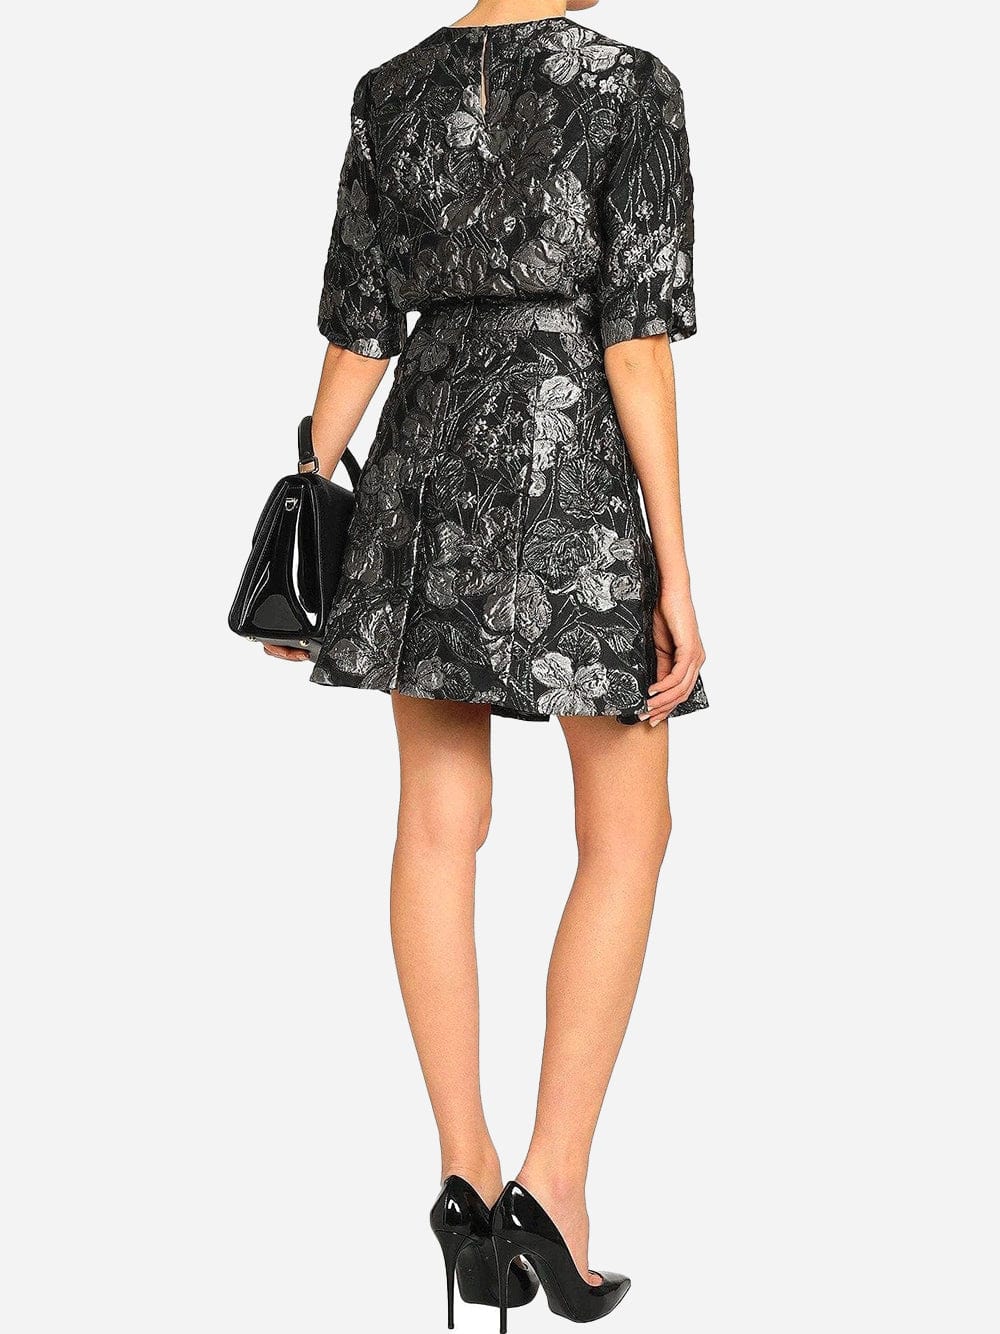 Dolce & Gabbana Brocade Floral Skirt